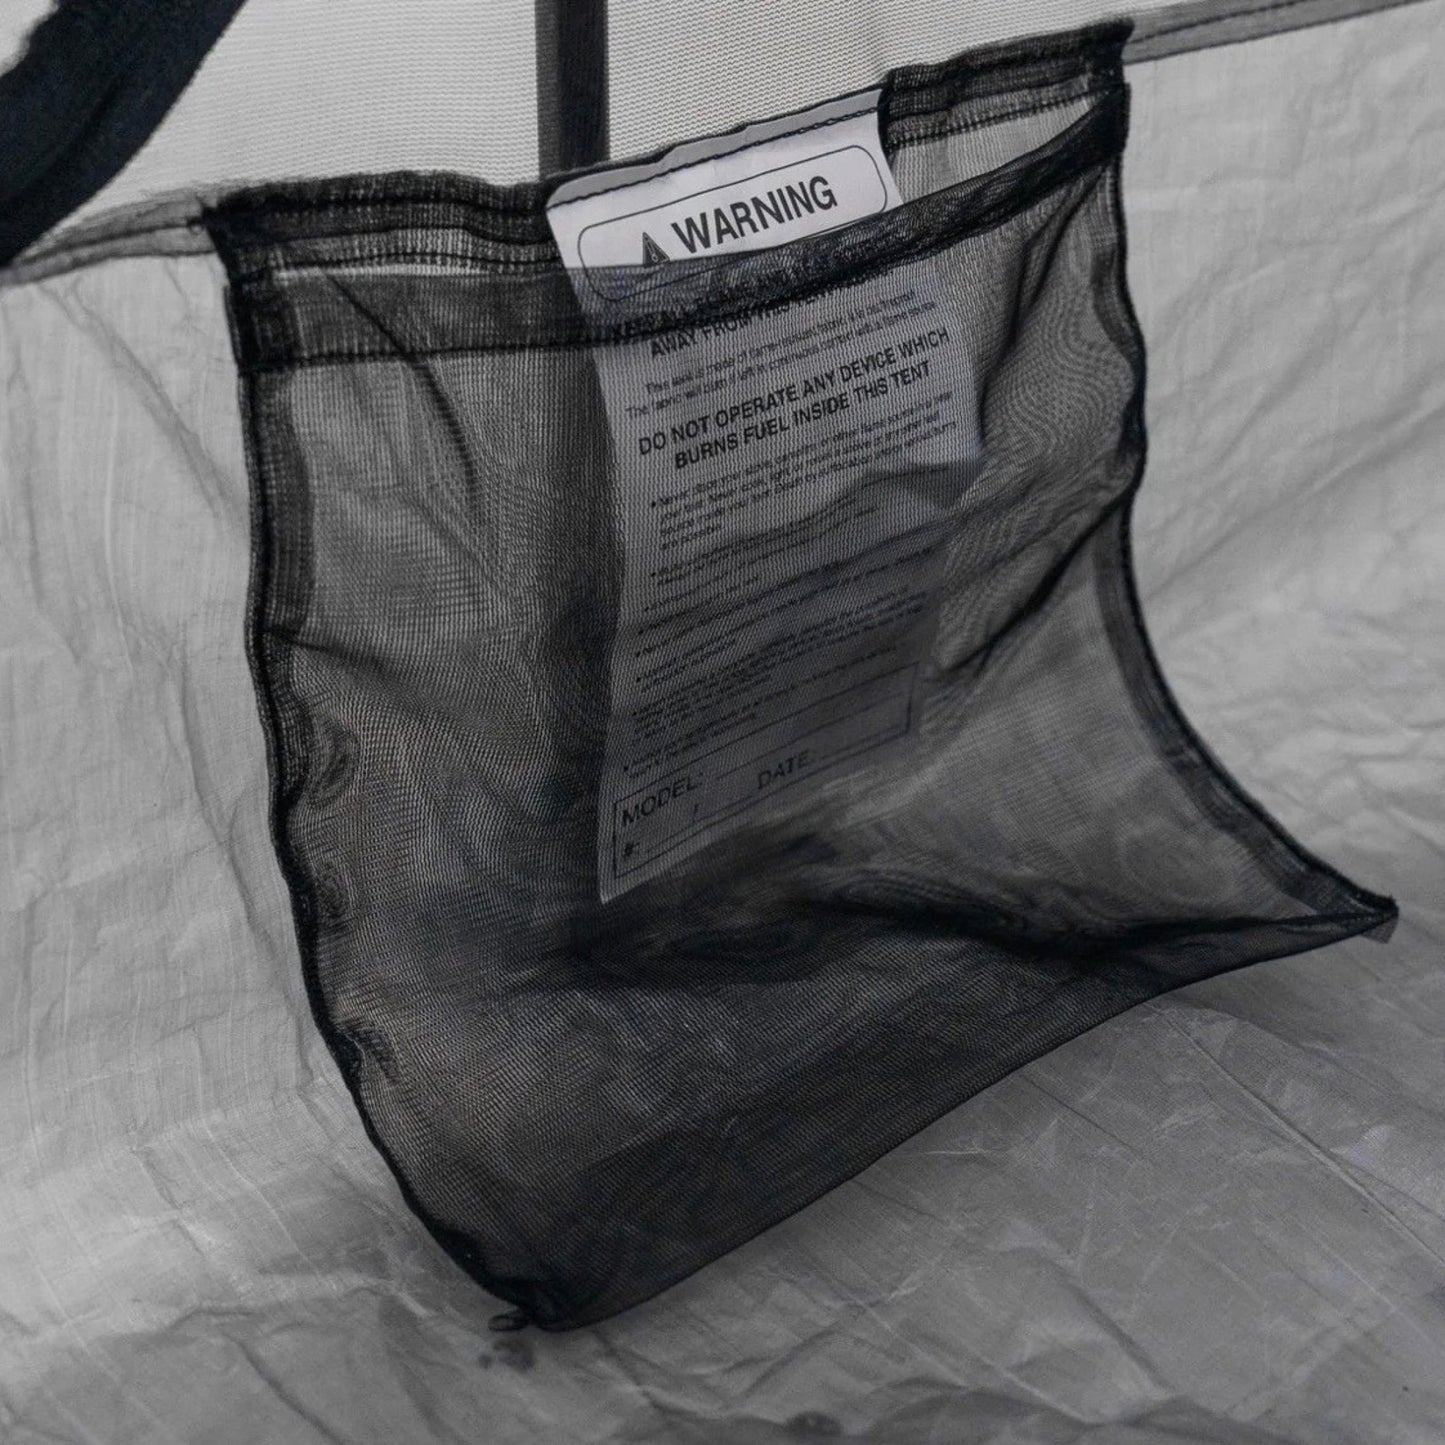 Zpacks Offset Solo Tent Ultralight Hiker